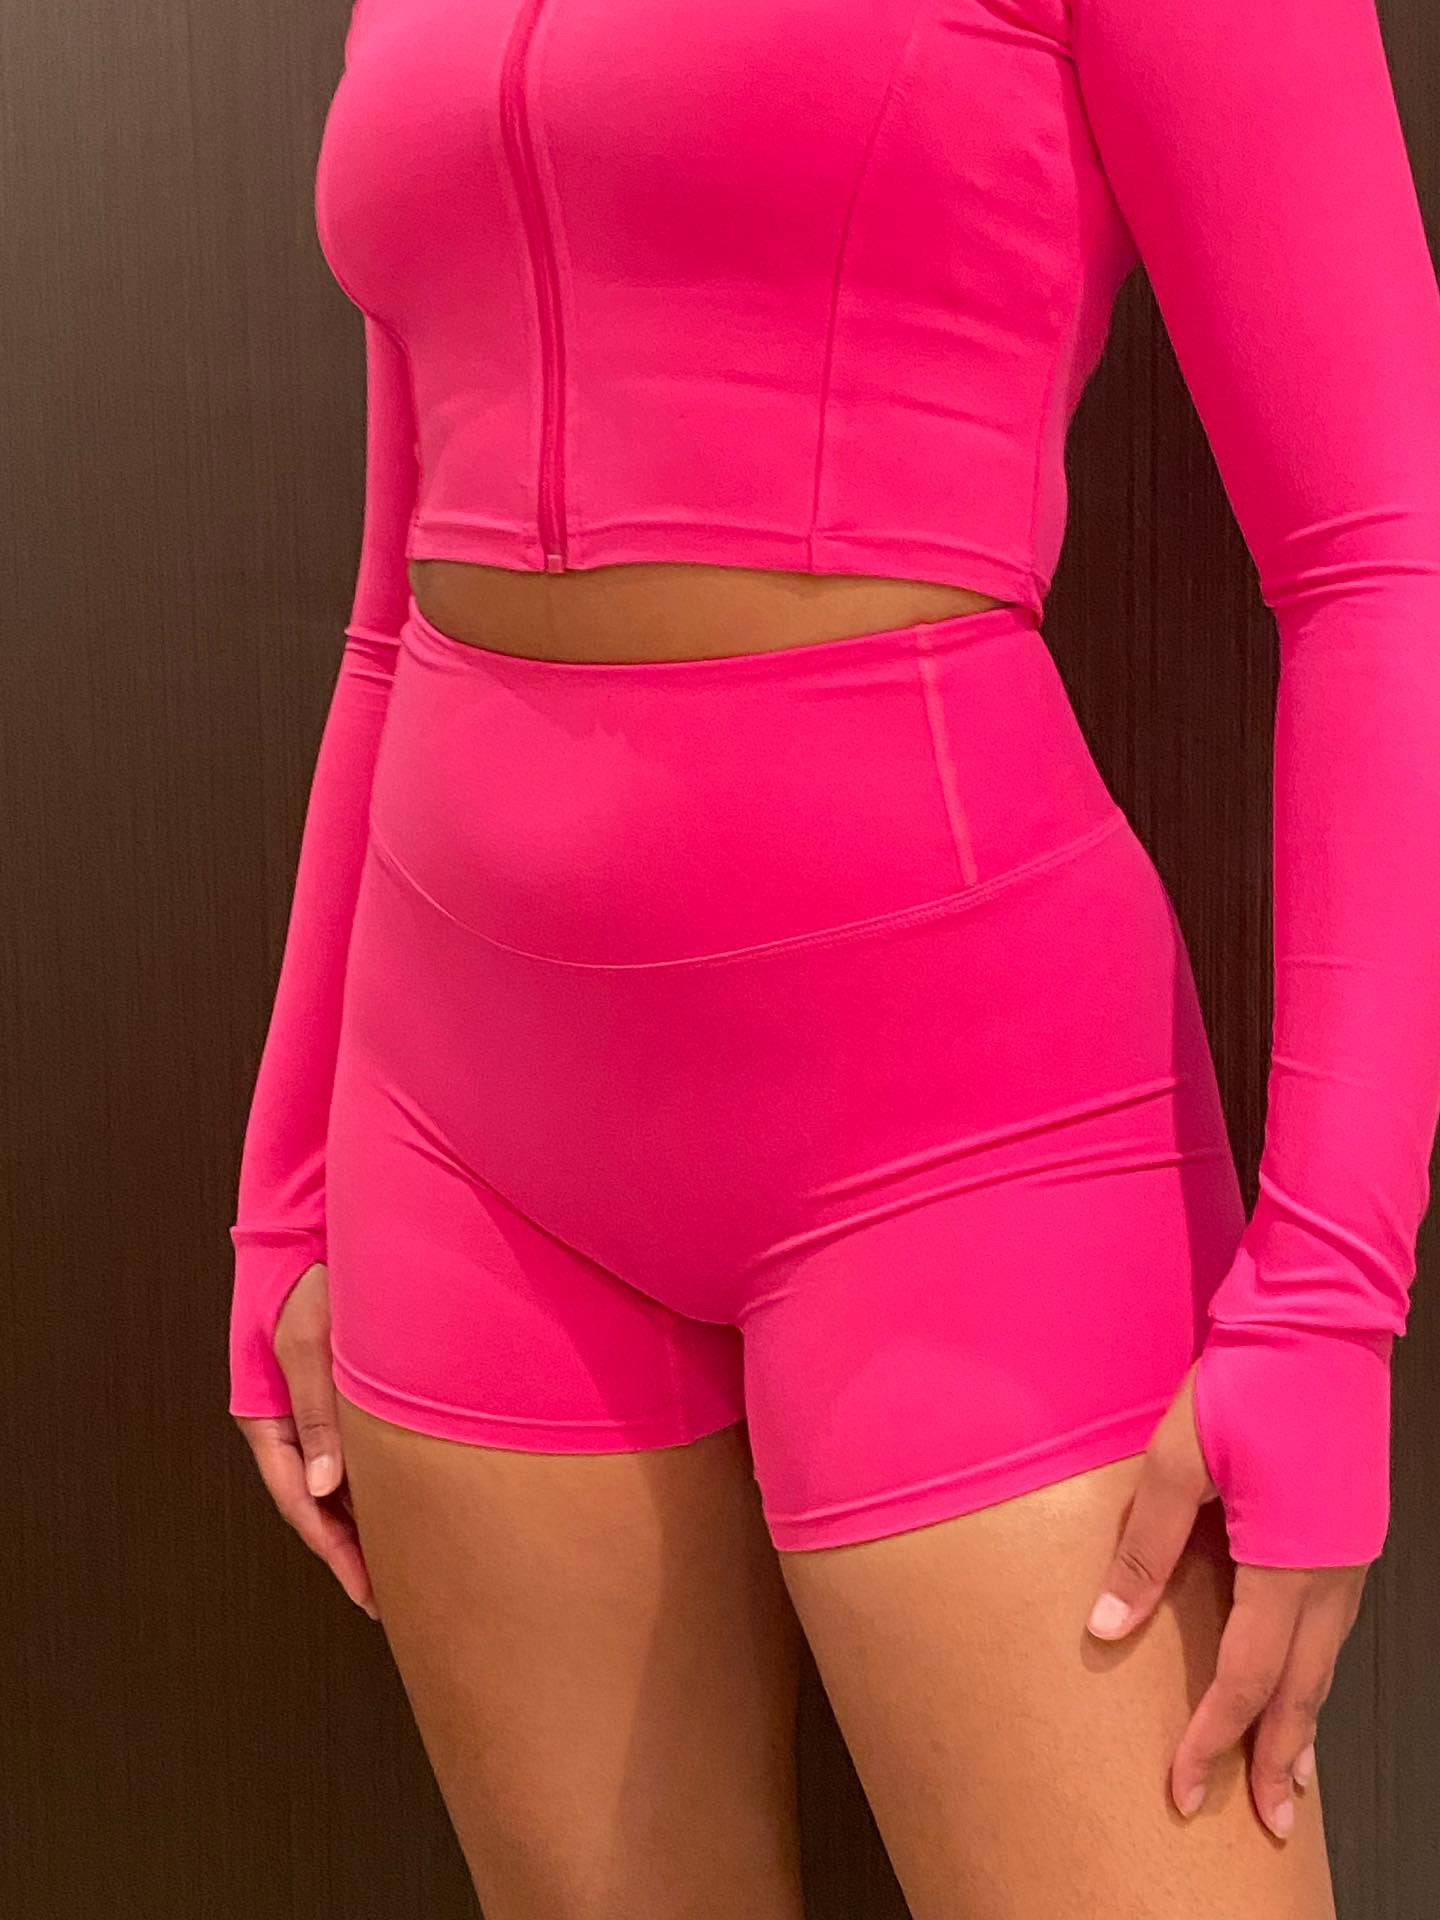 Pink Mesh Biker Shorts & One Shoulder Lace-Up Crop Top Set - Pink / S